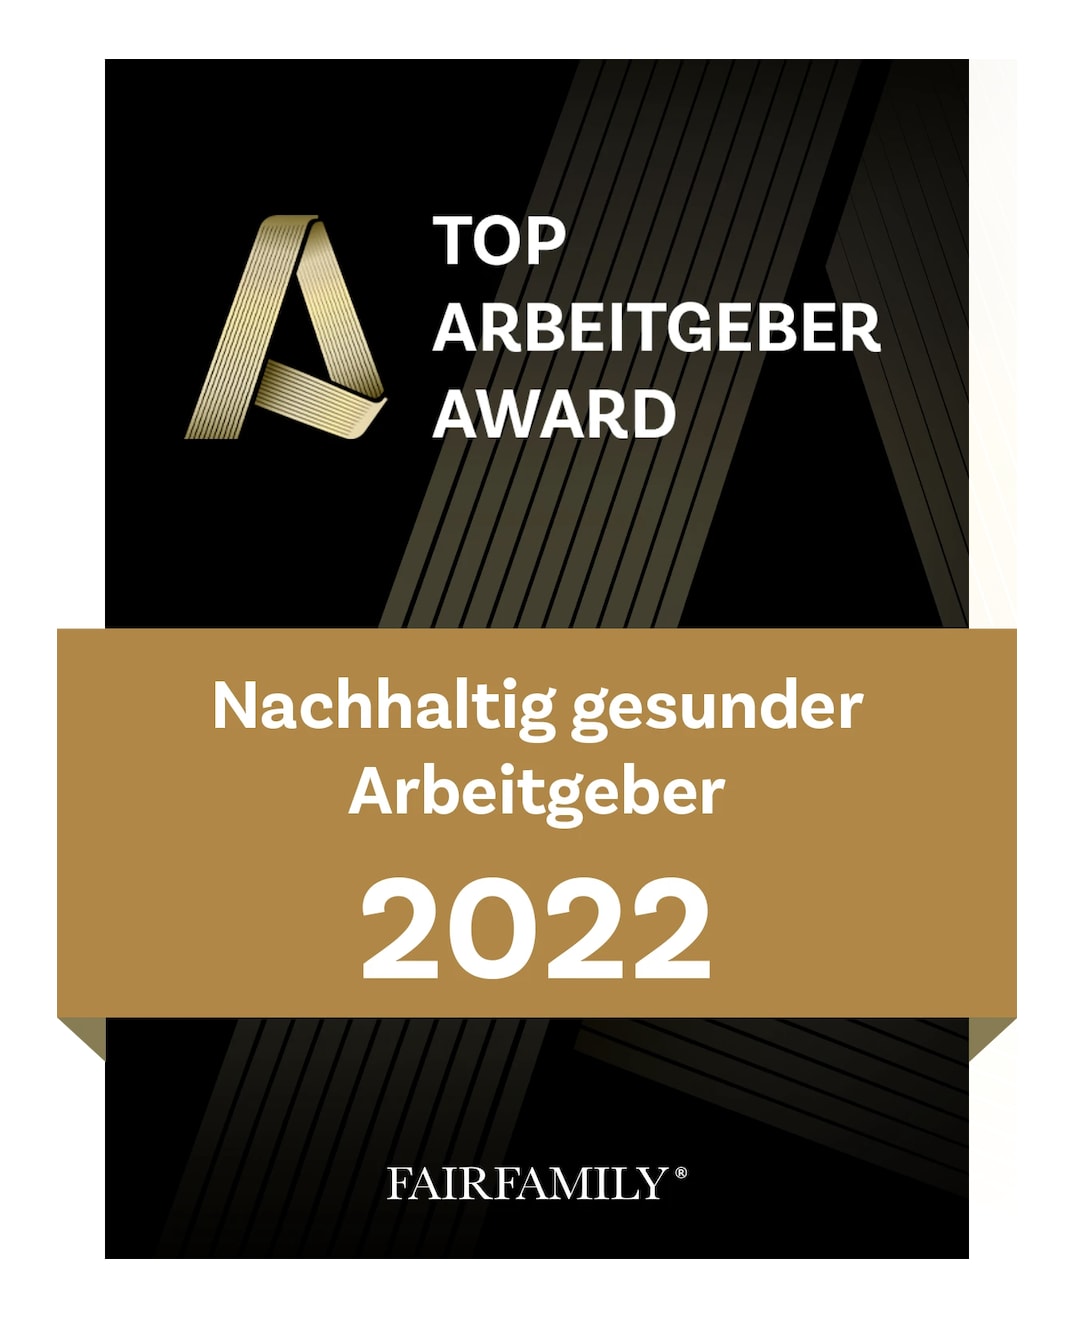 Top_Arbeitgeber_Award